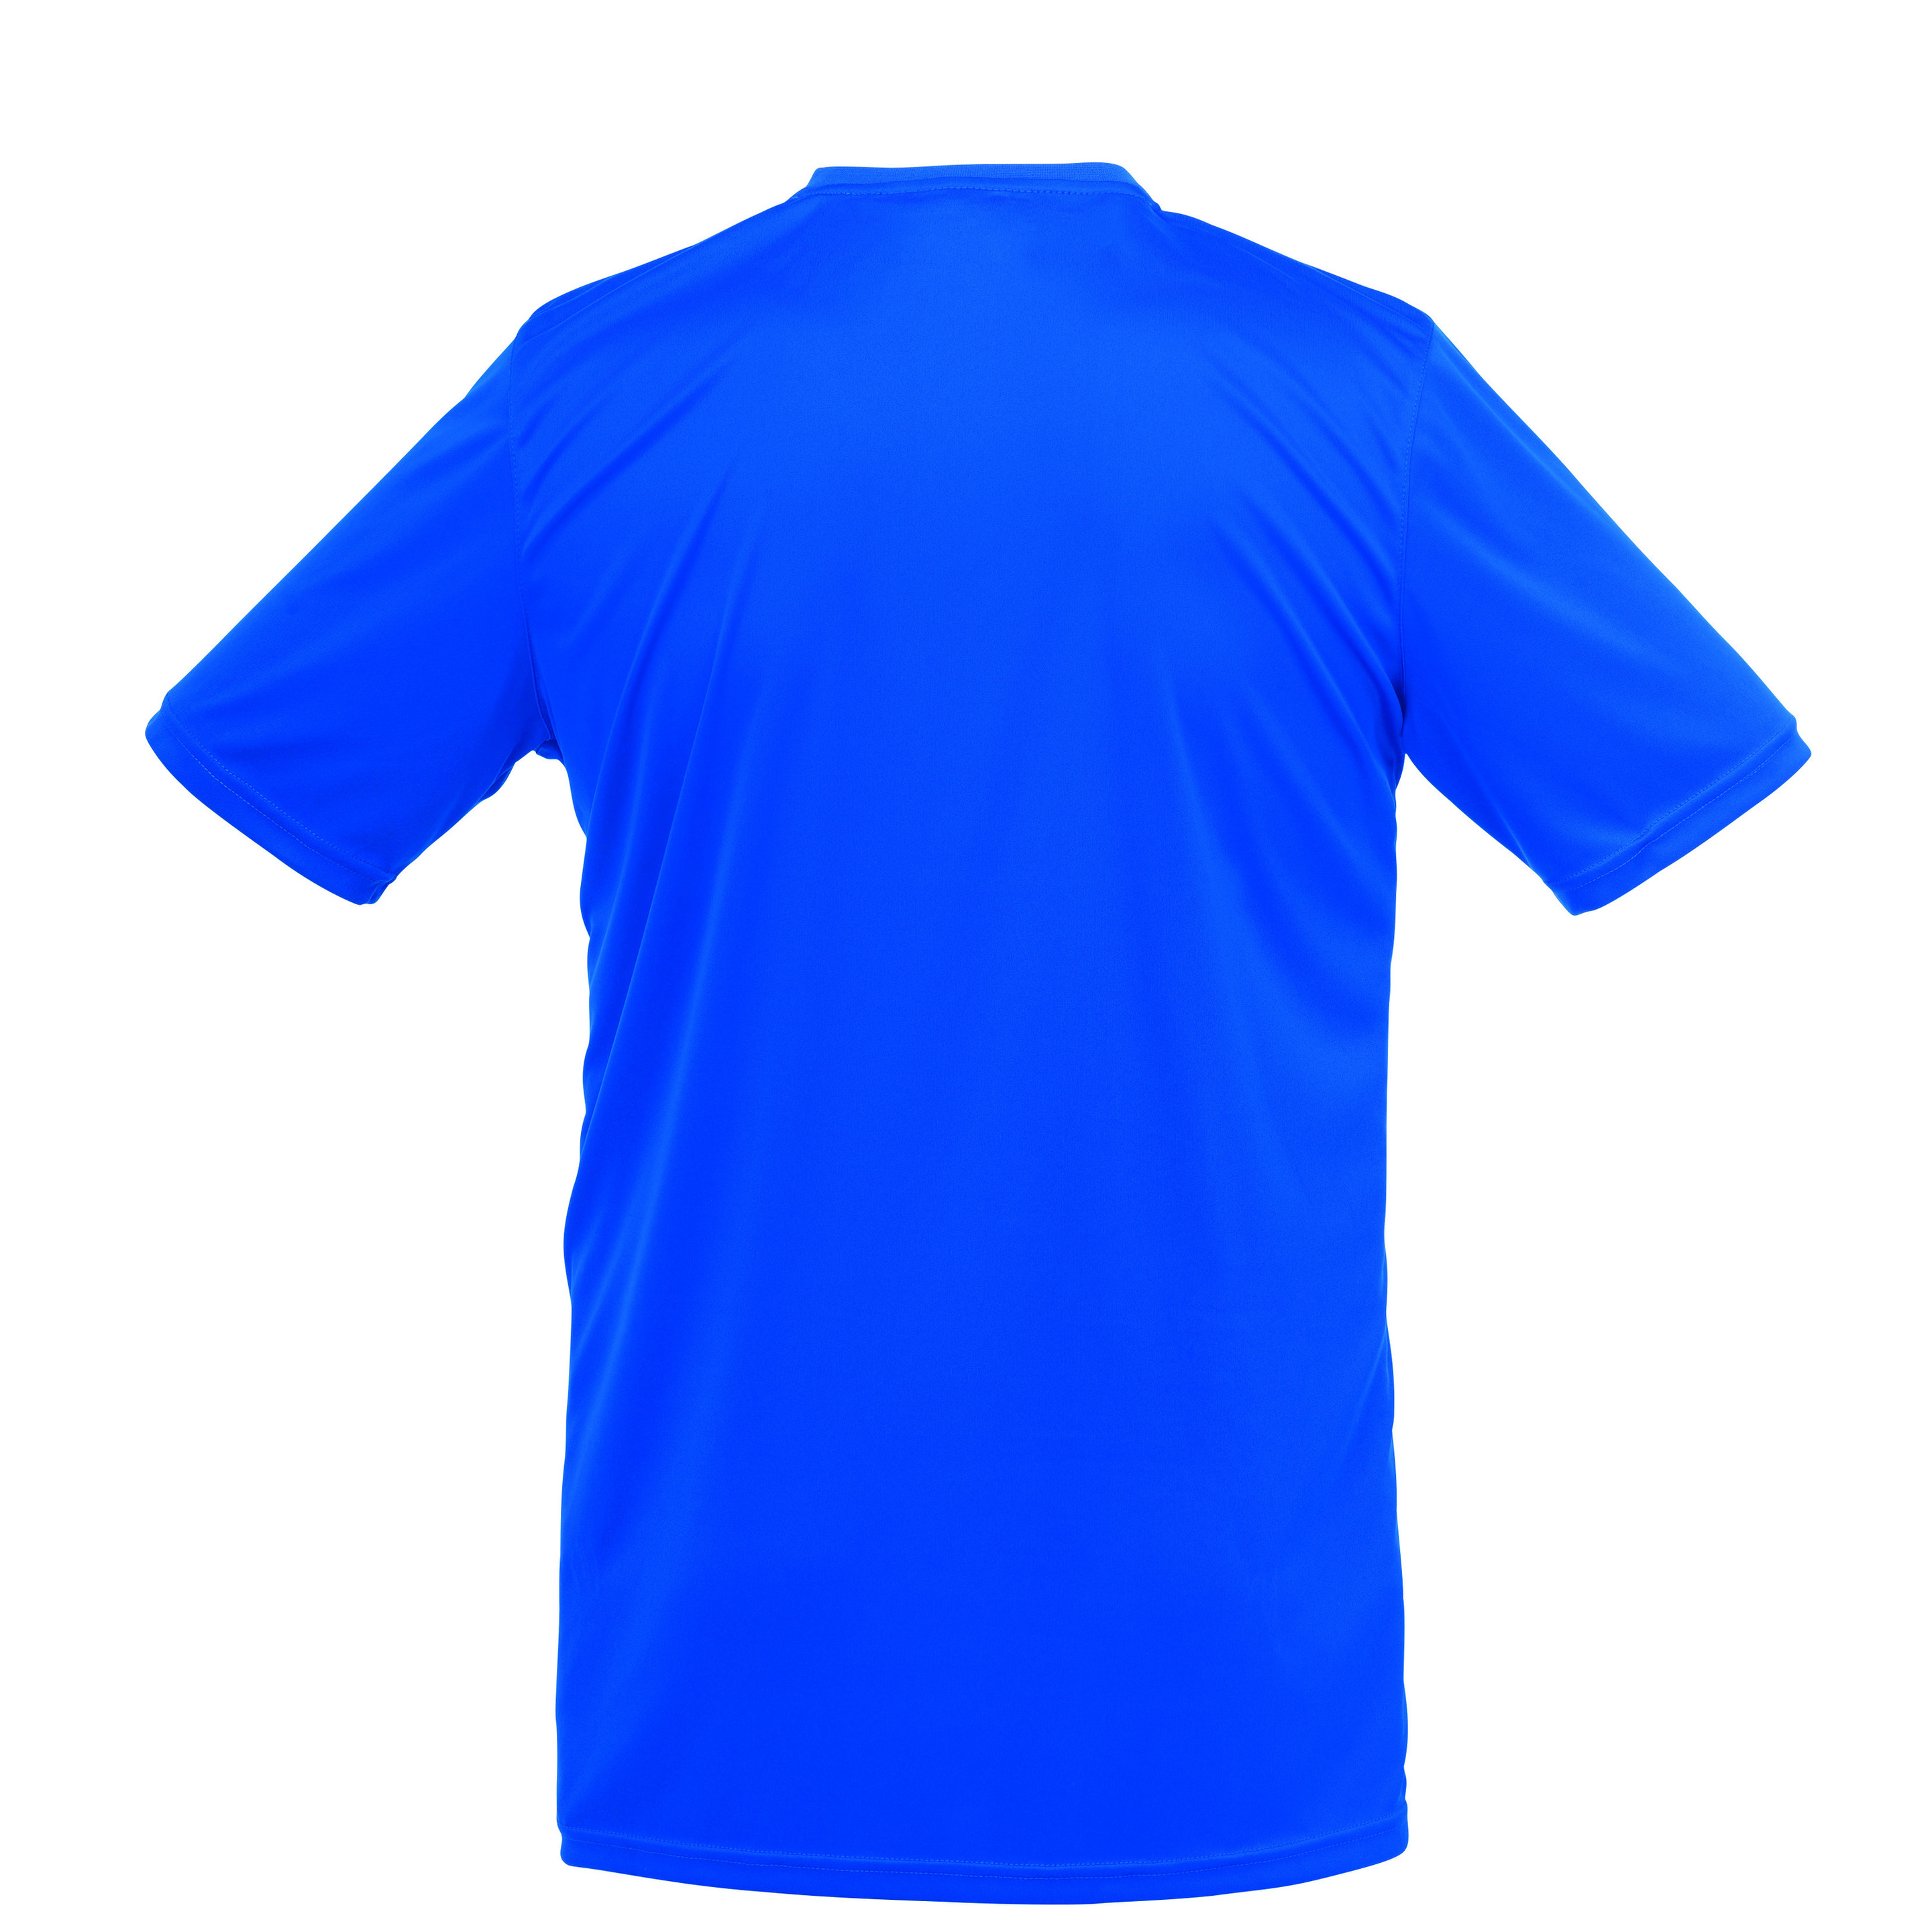 Stream 3.0 Camiseta Mc Azur Uhlsport